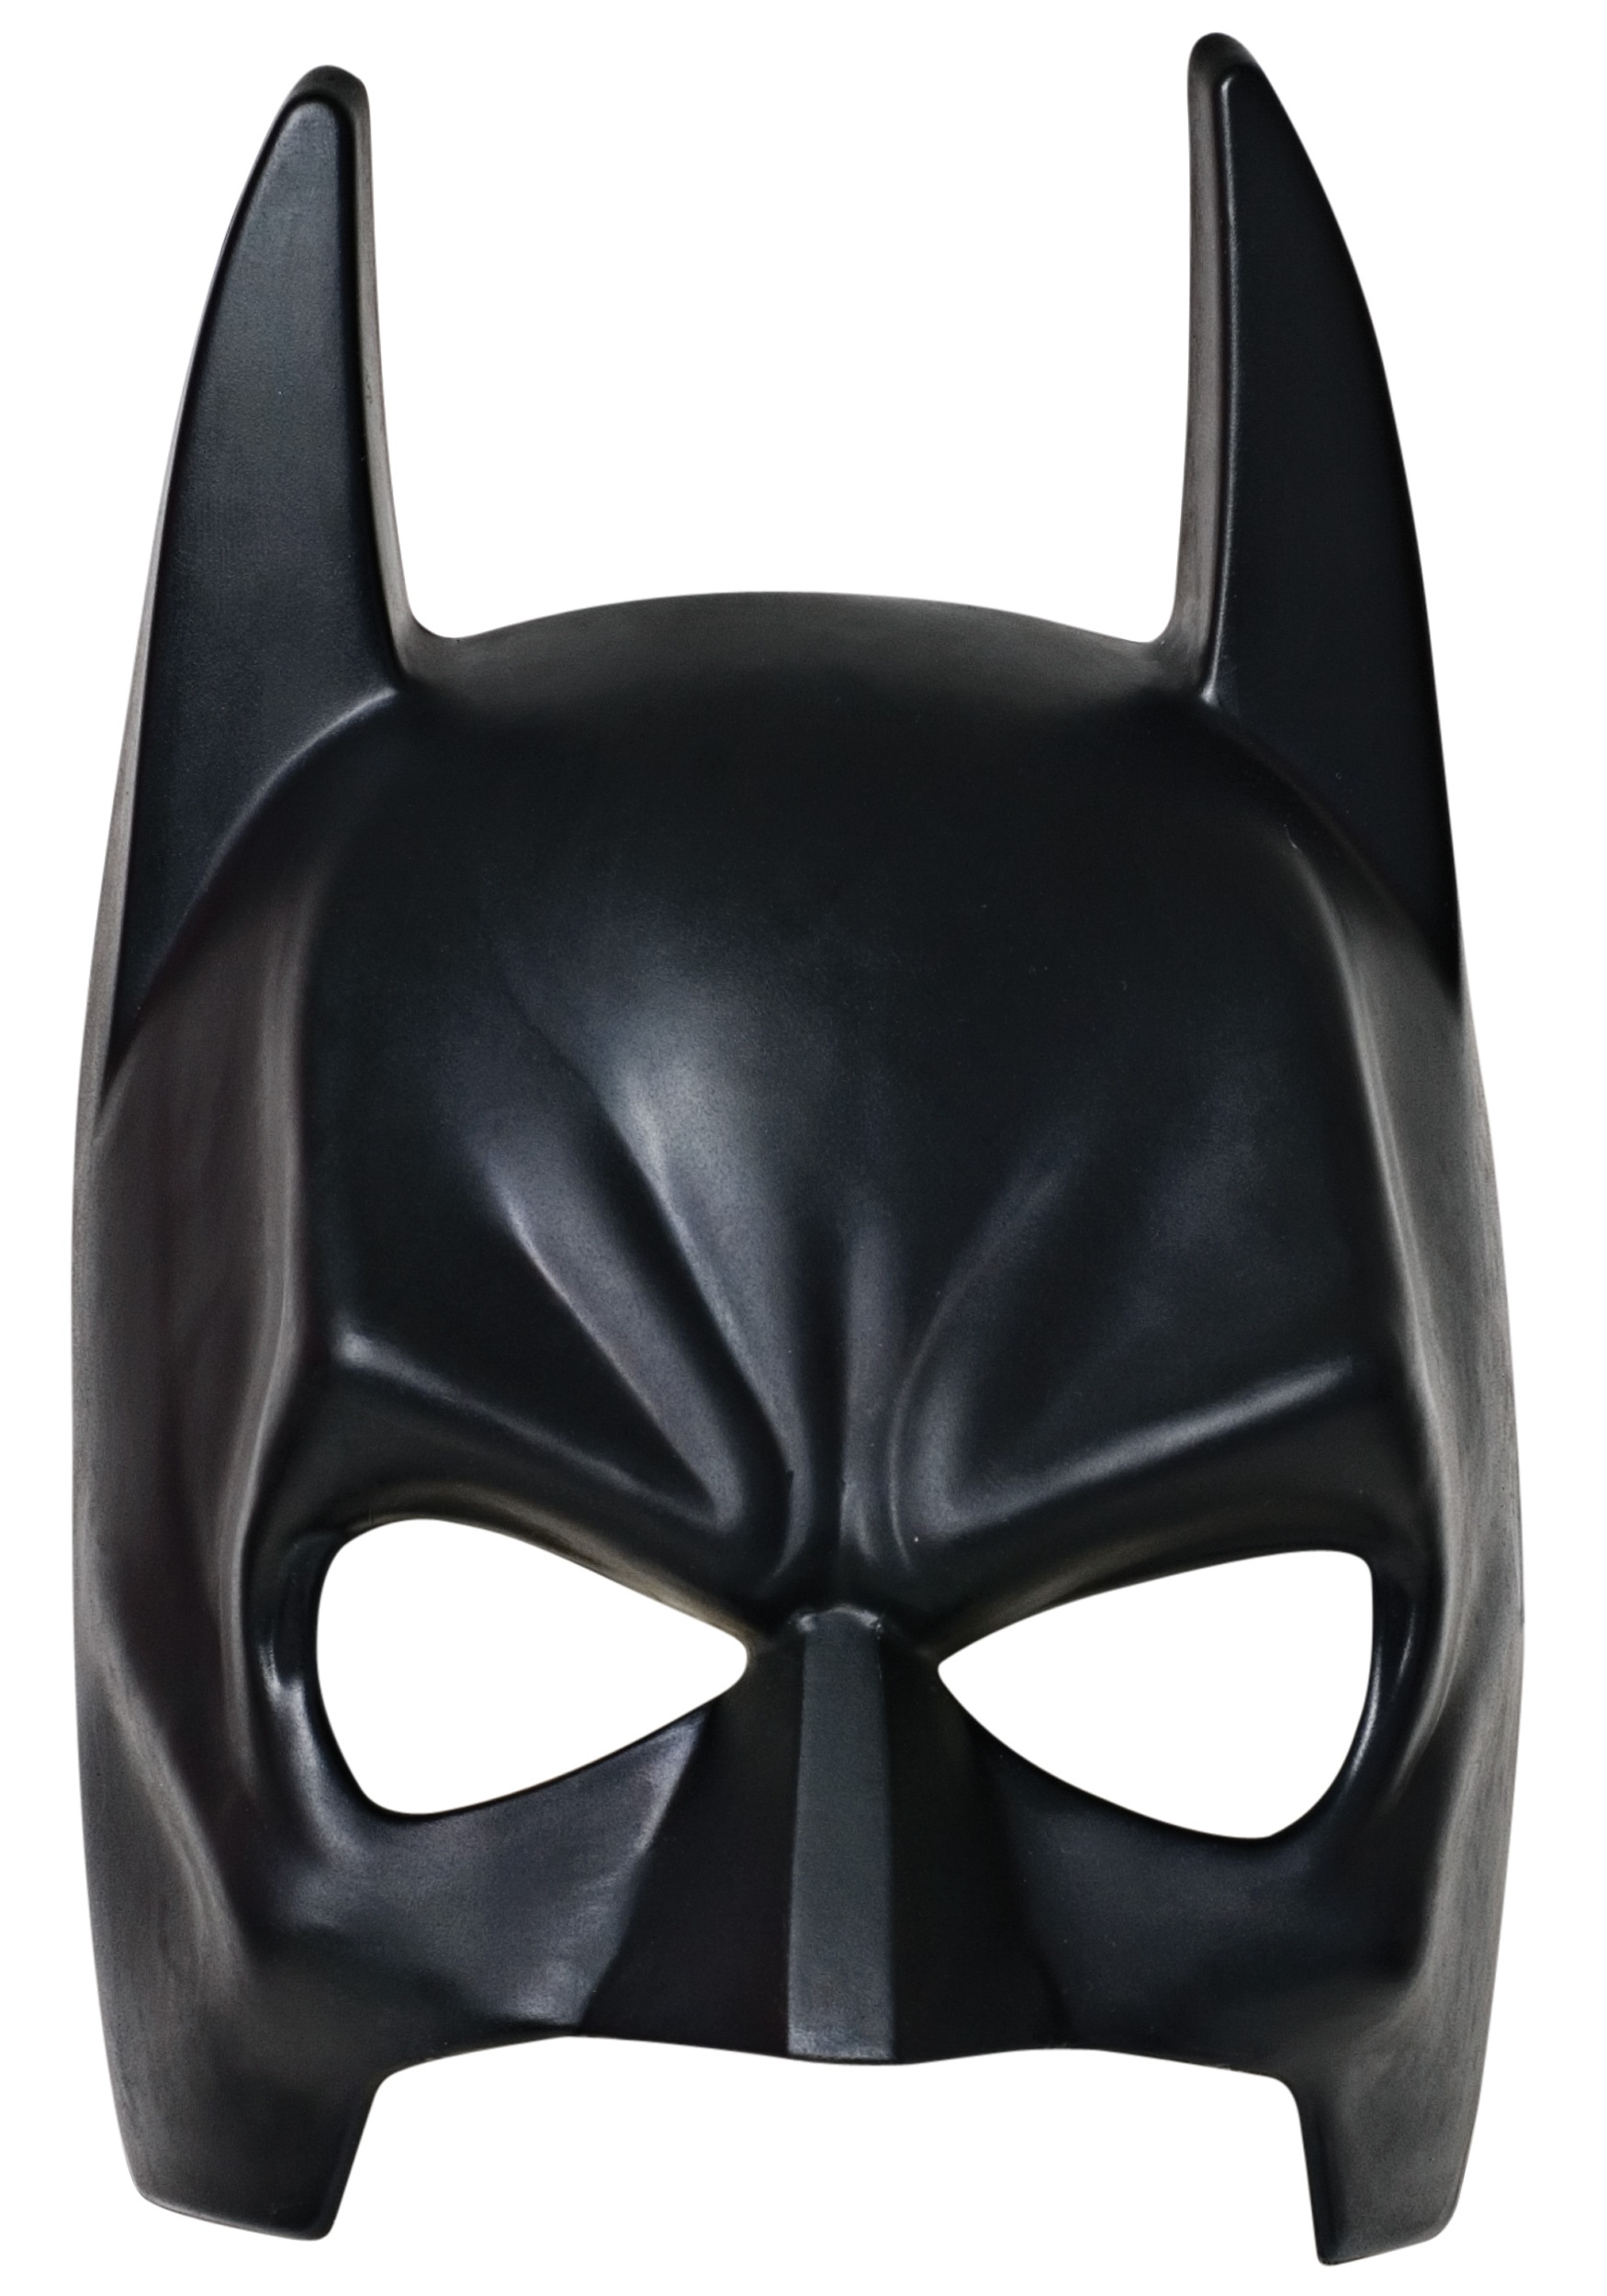 Mascara Batman Adulta